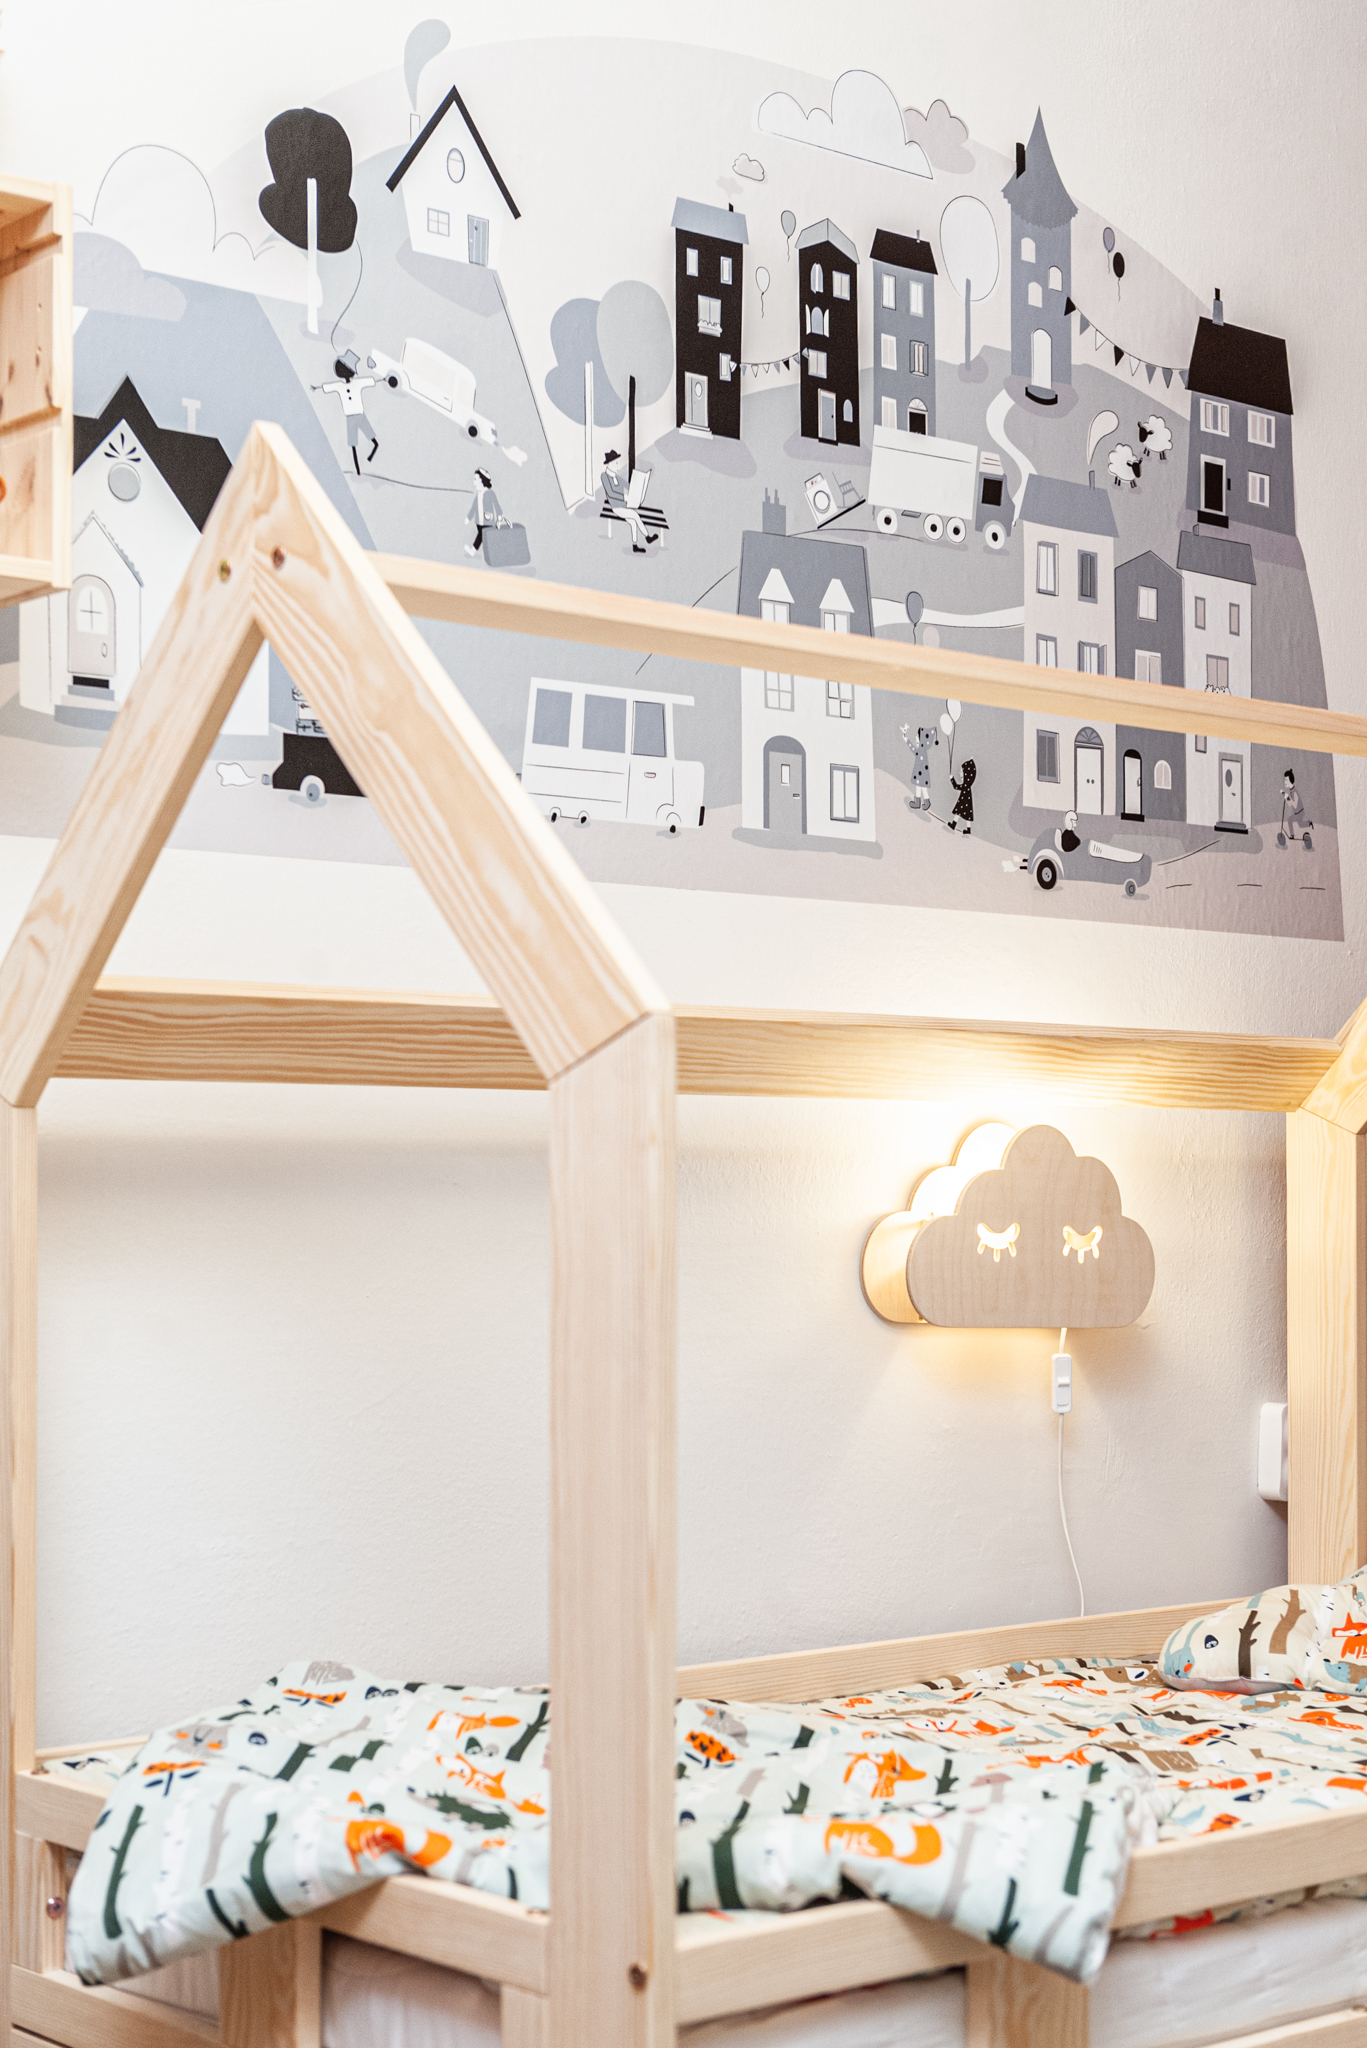 łóżko domek drewniane inspiracja do pokoju dziewczynki mamaville